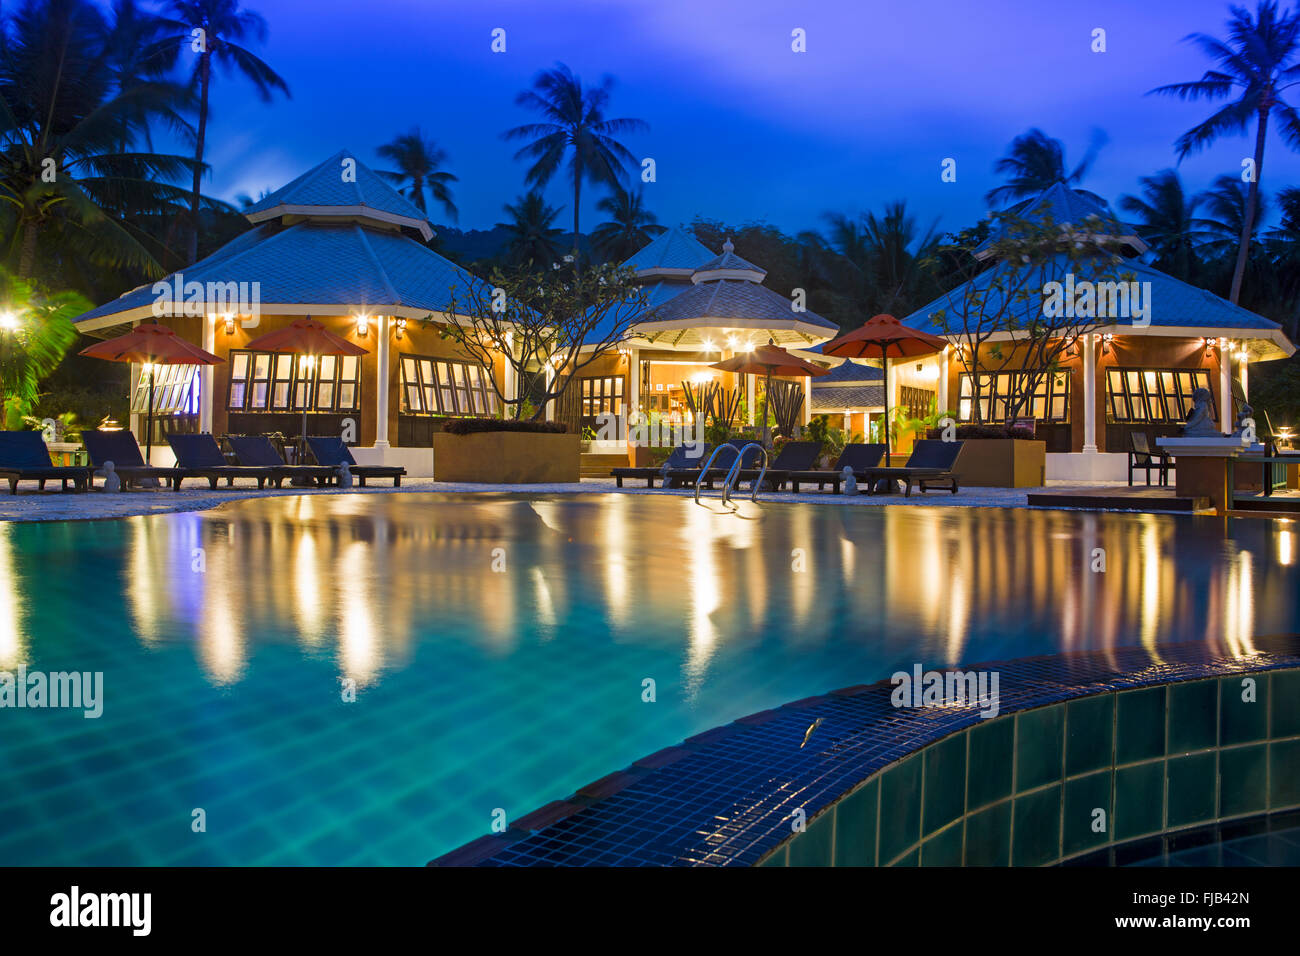 The swimming pool at the Pariya resort on Haad Yuan, Ko Pha Ngan, Thailand Stock Photo